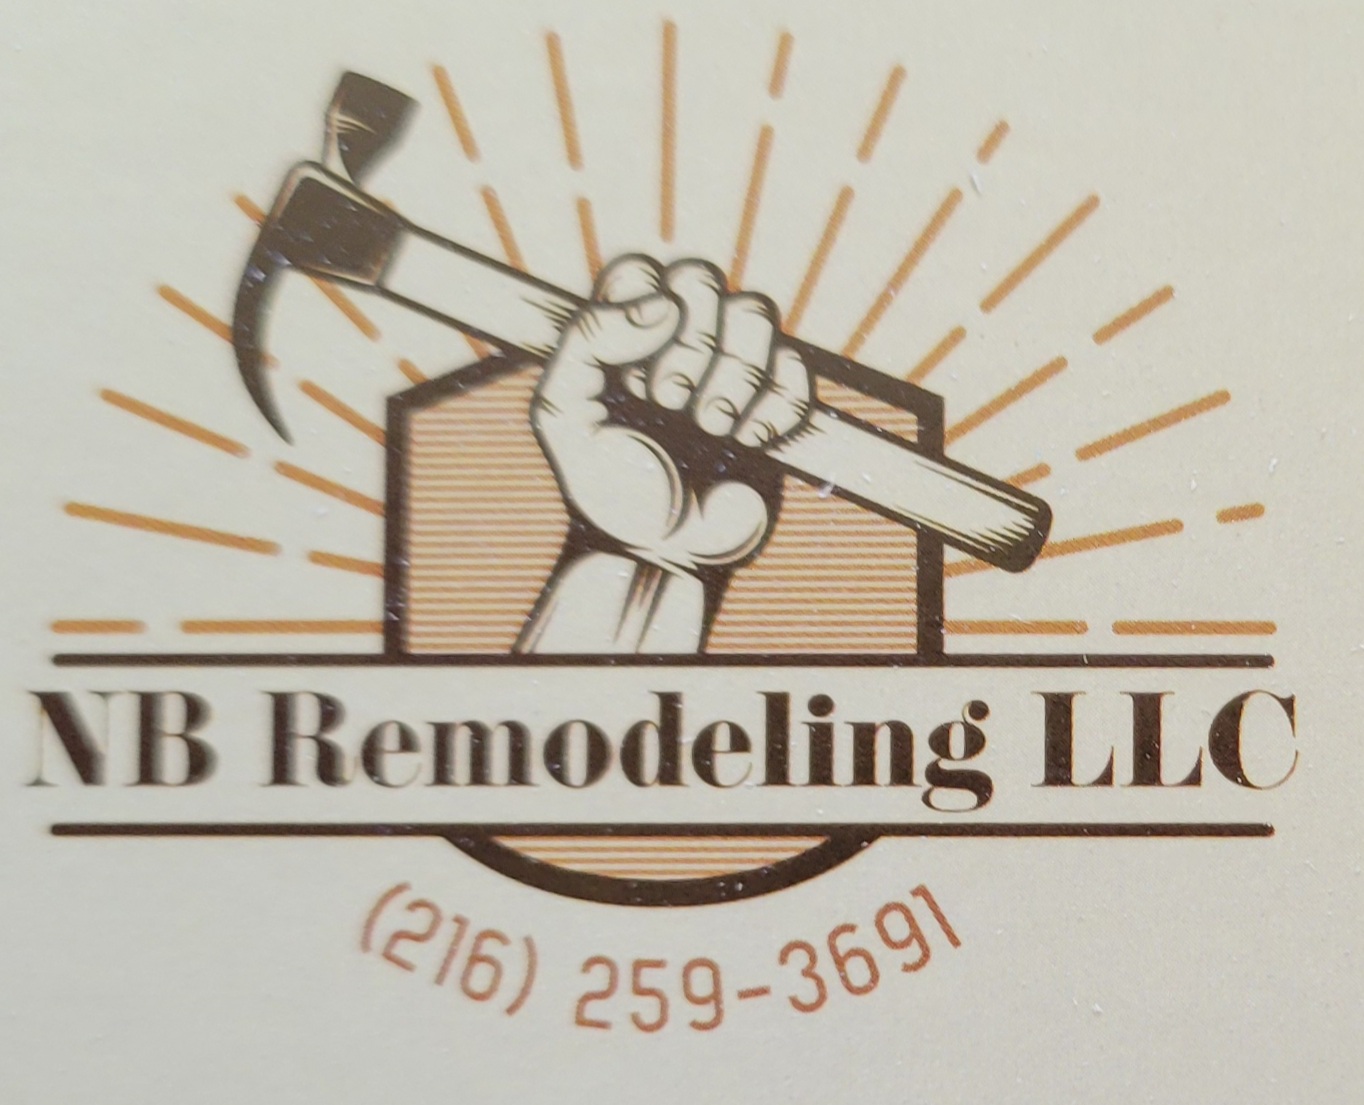 NB Remodeling, LLC. Logo